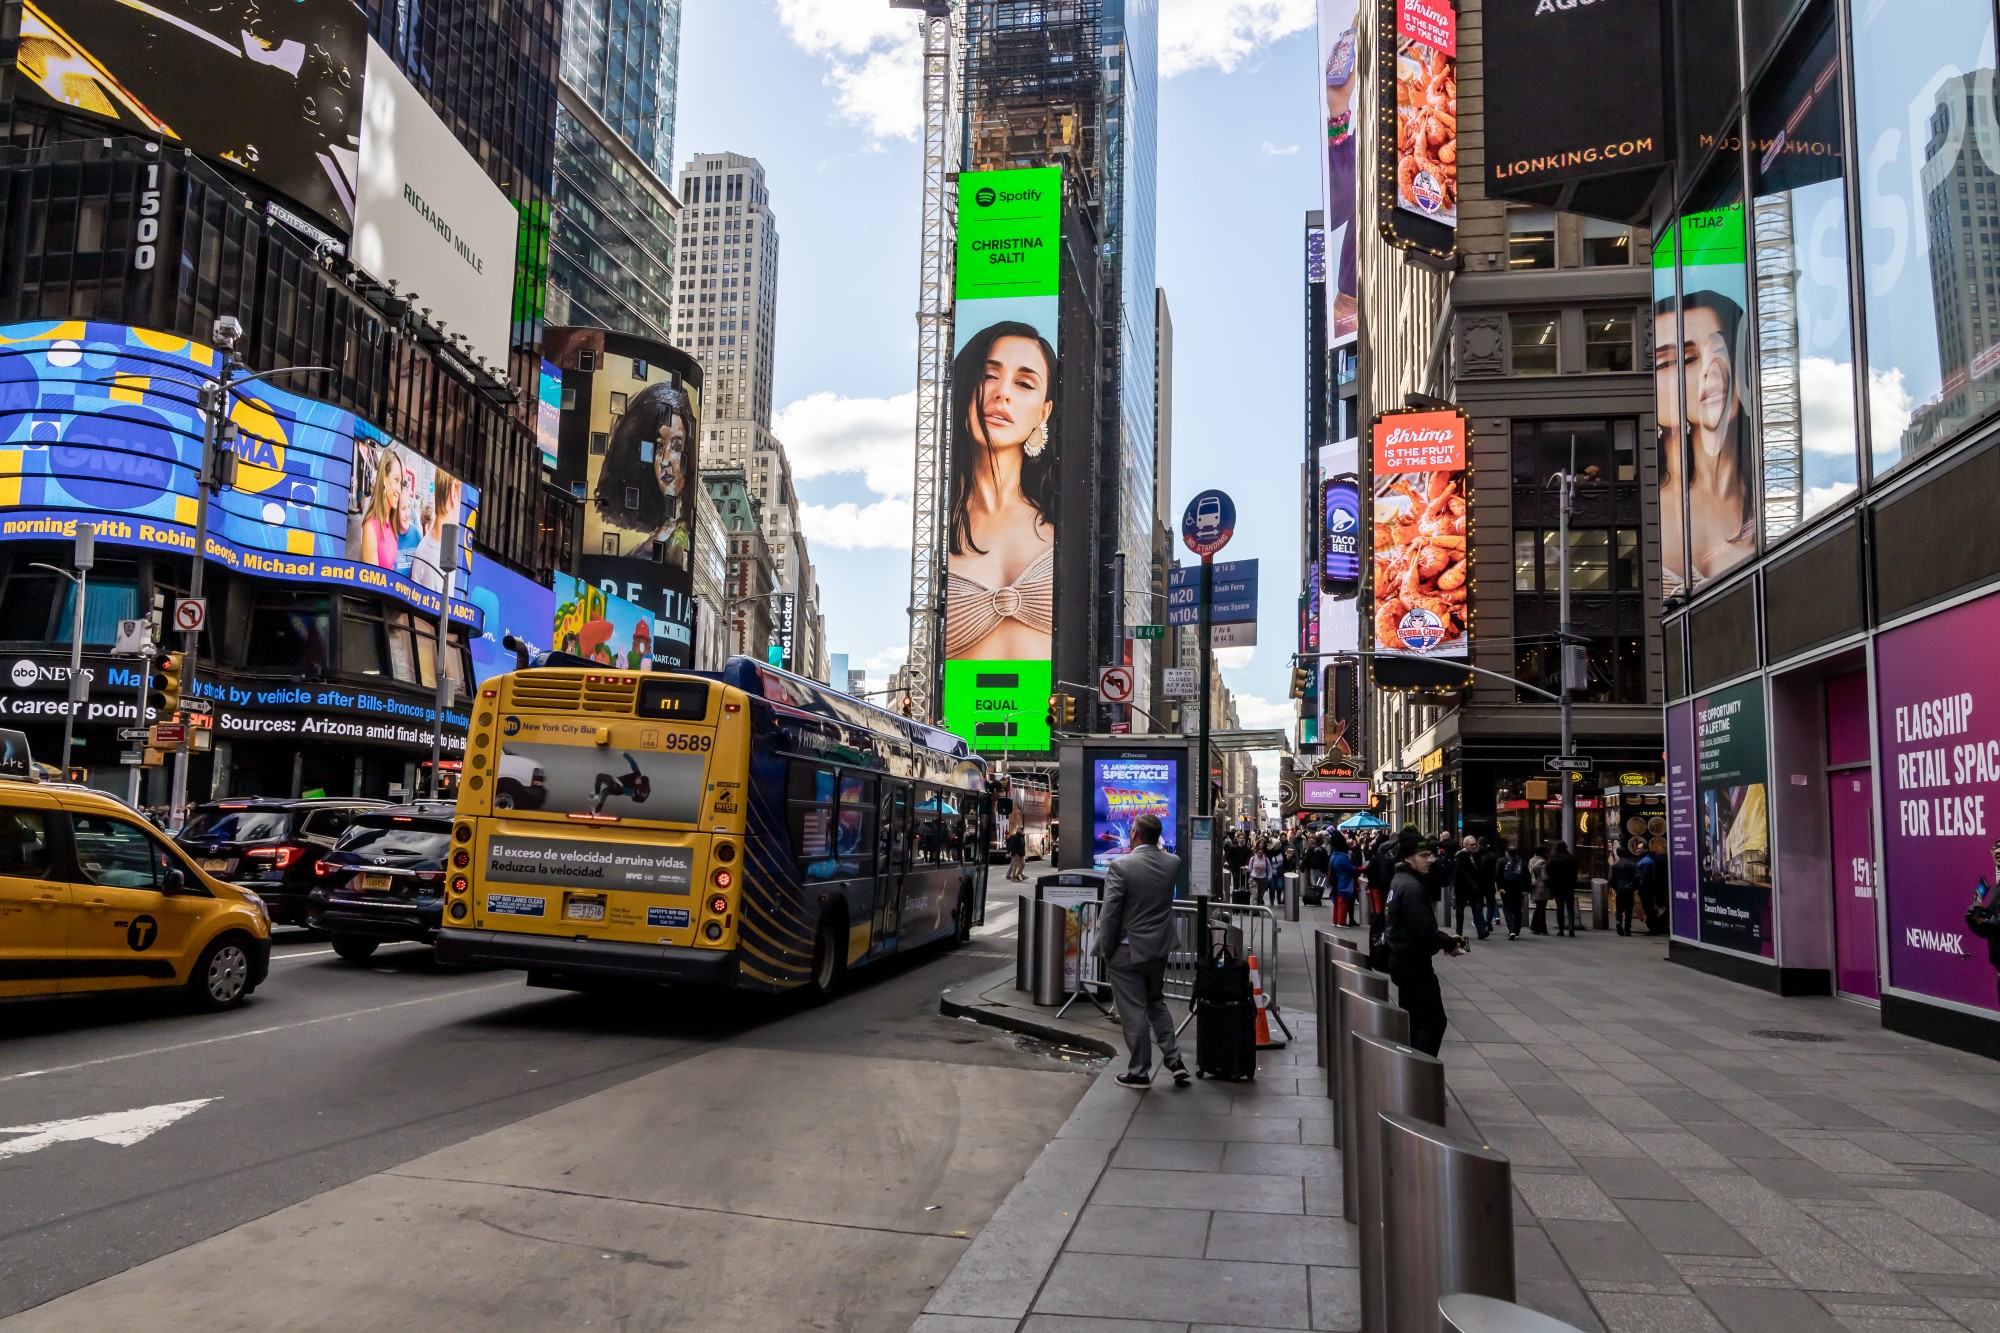 Εικόνα άρθρου Χριστίνα Σάλτη μπήκε σε Billboard στην Times Square